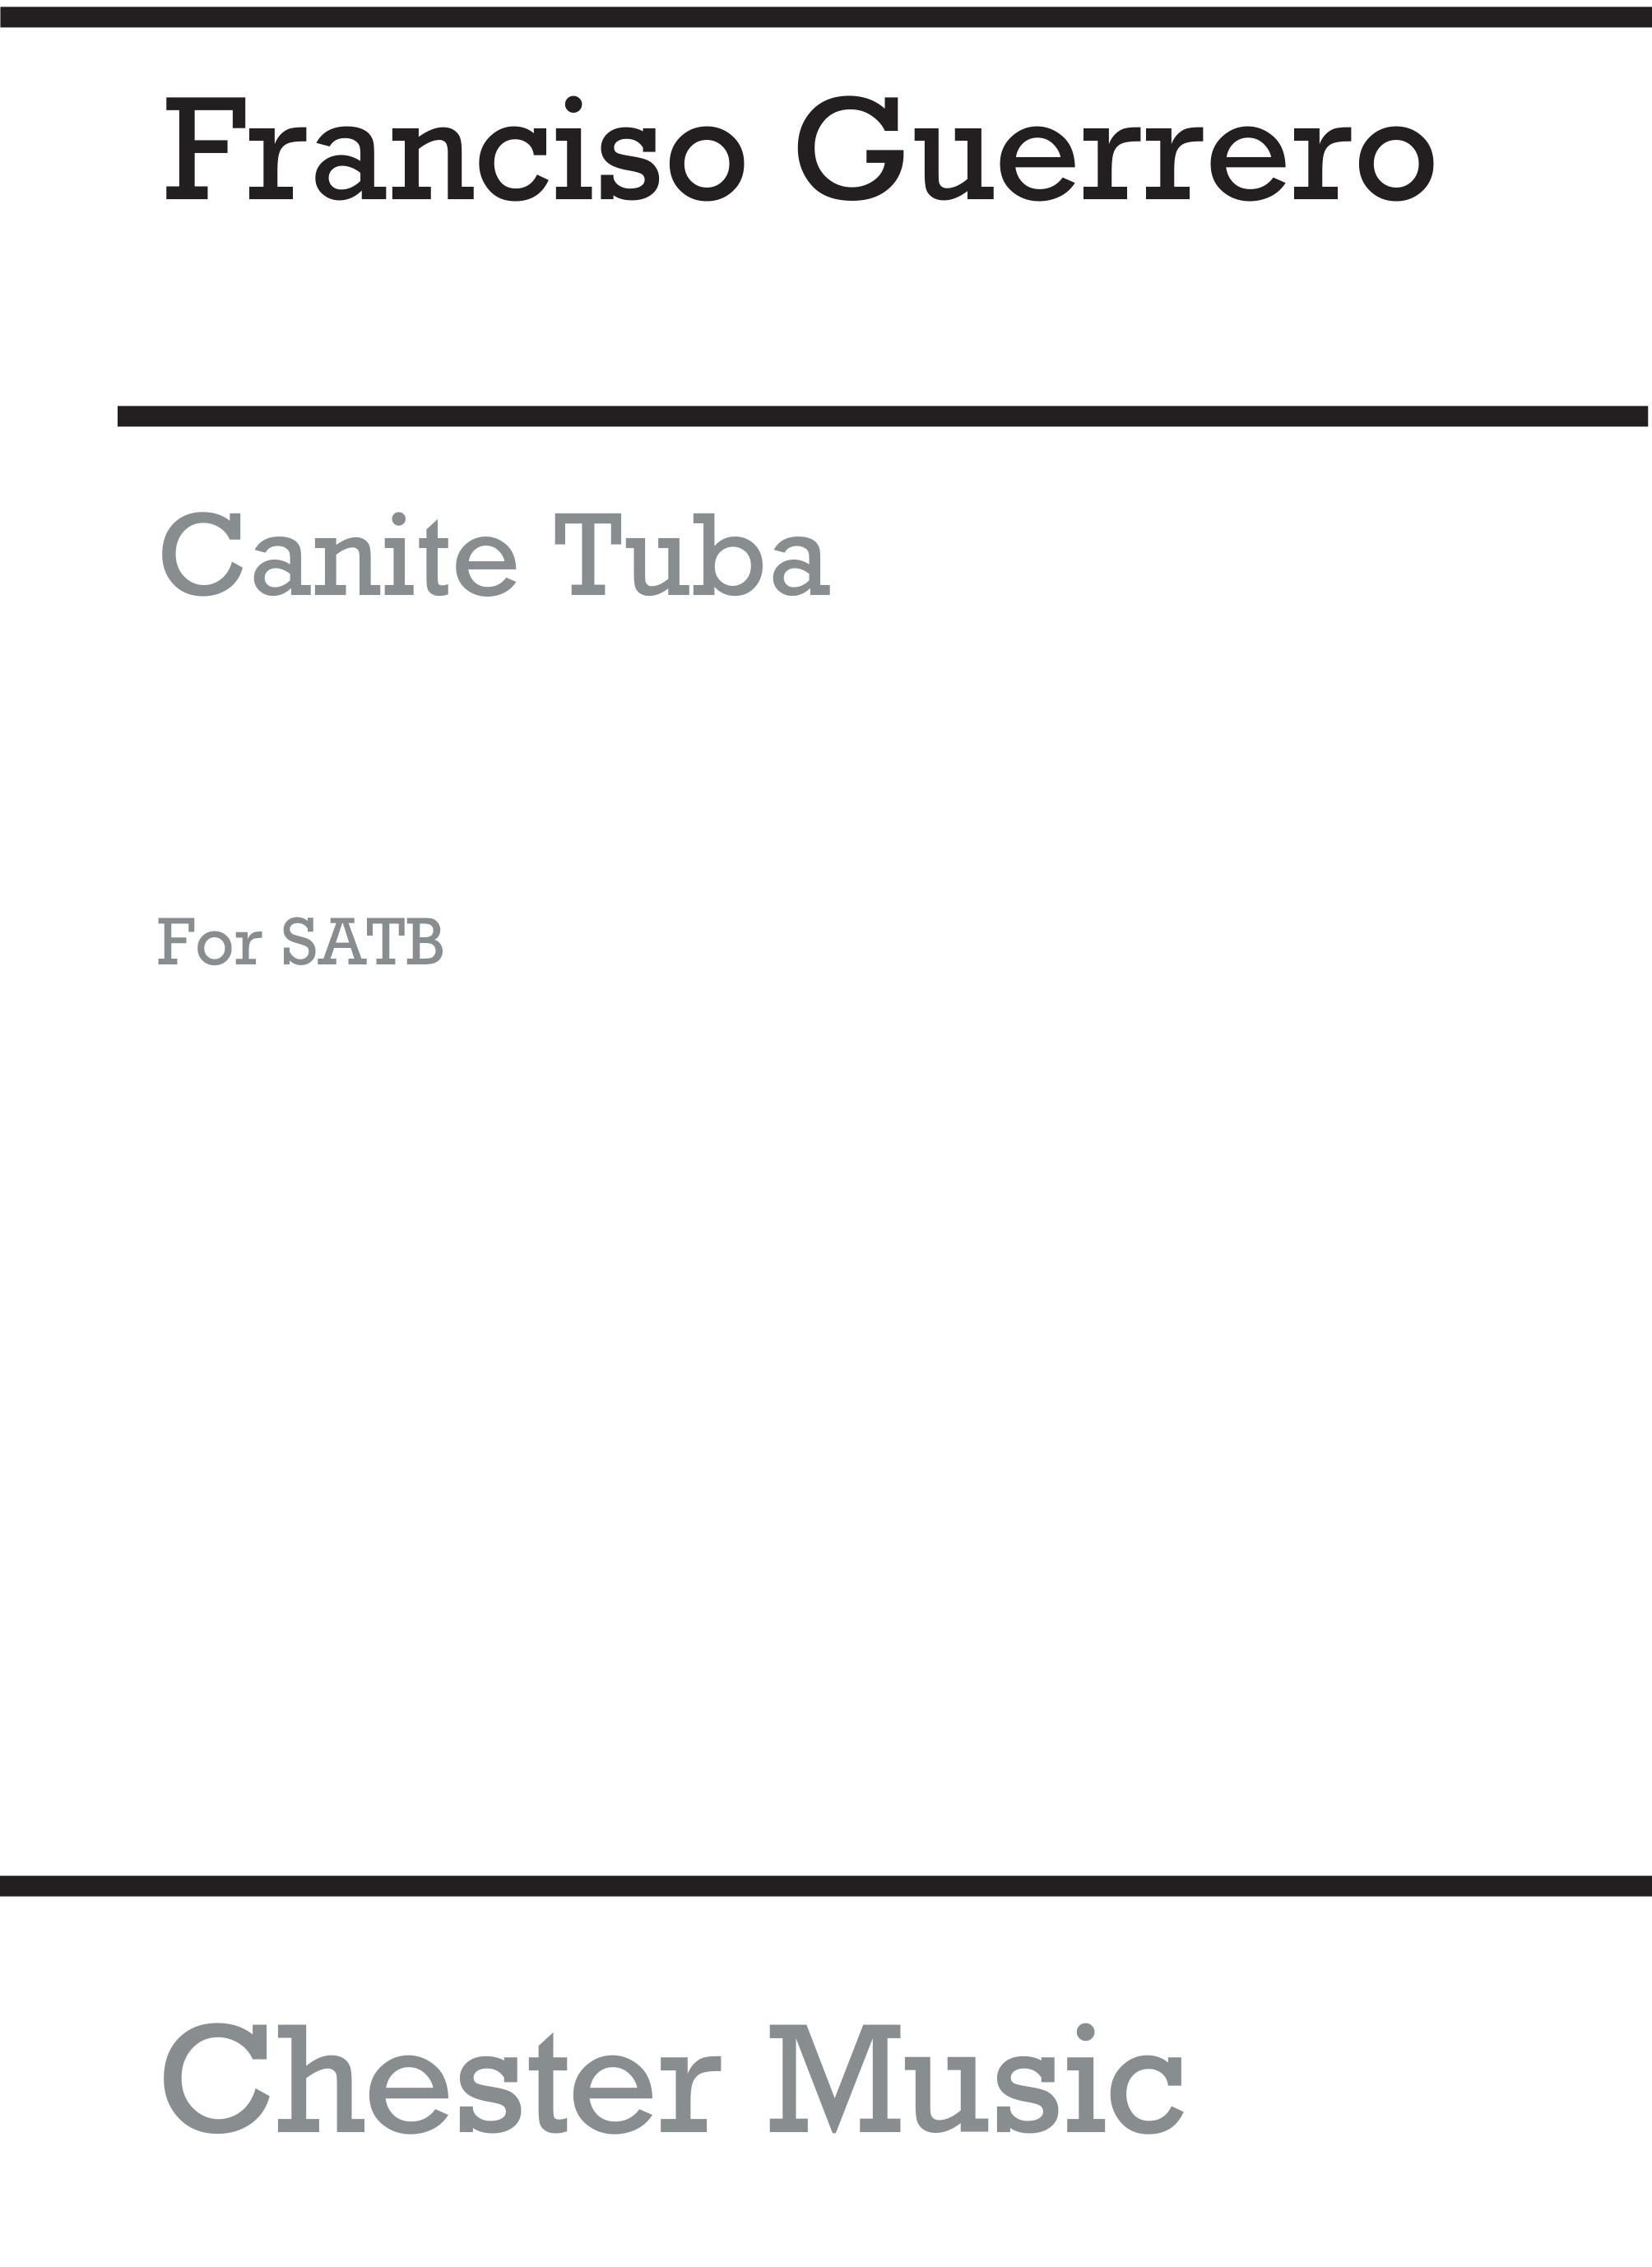 Francisco Guerrero: Canite Tuba: Mixed Choir